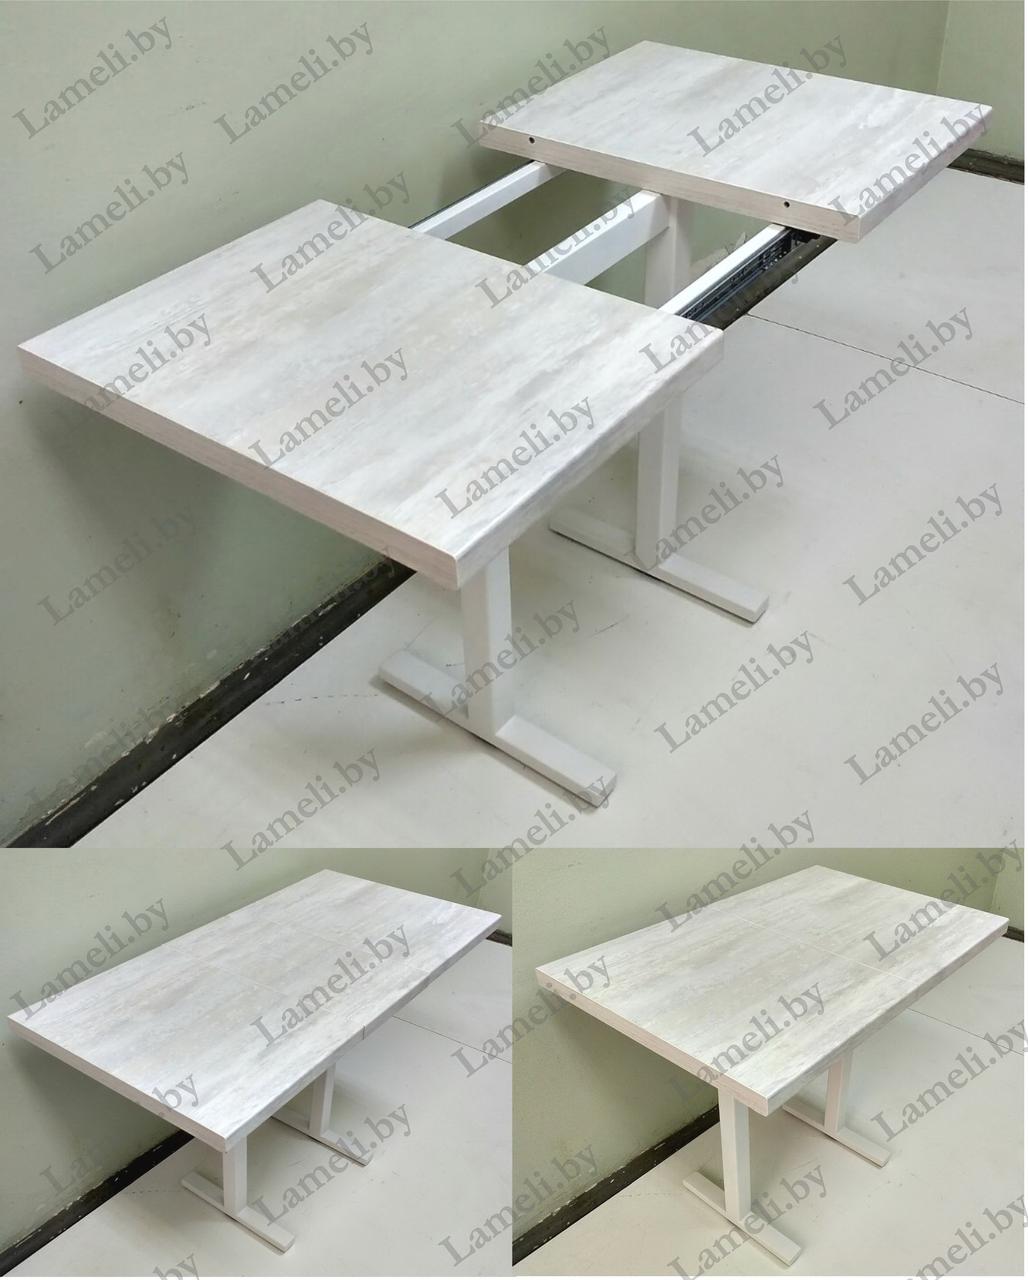 Раздвижной стол из постформинга, ЛДСП или массива дуба на металлокаркасе серии "Н" с выбором цвета и размера